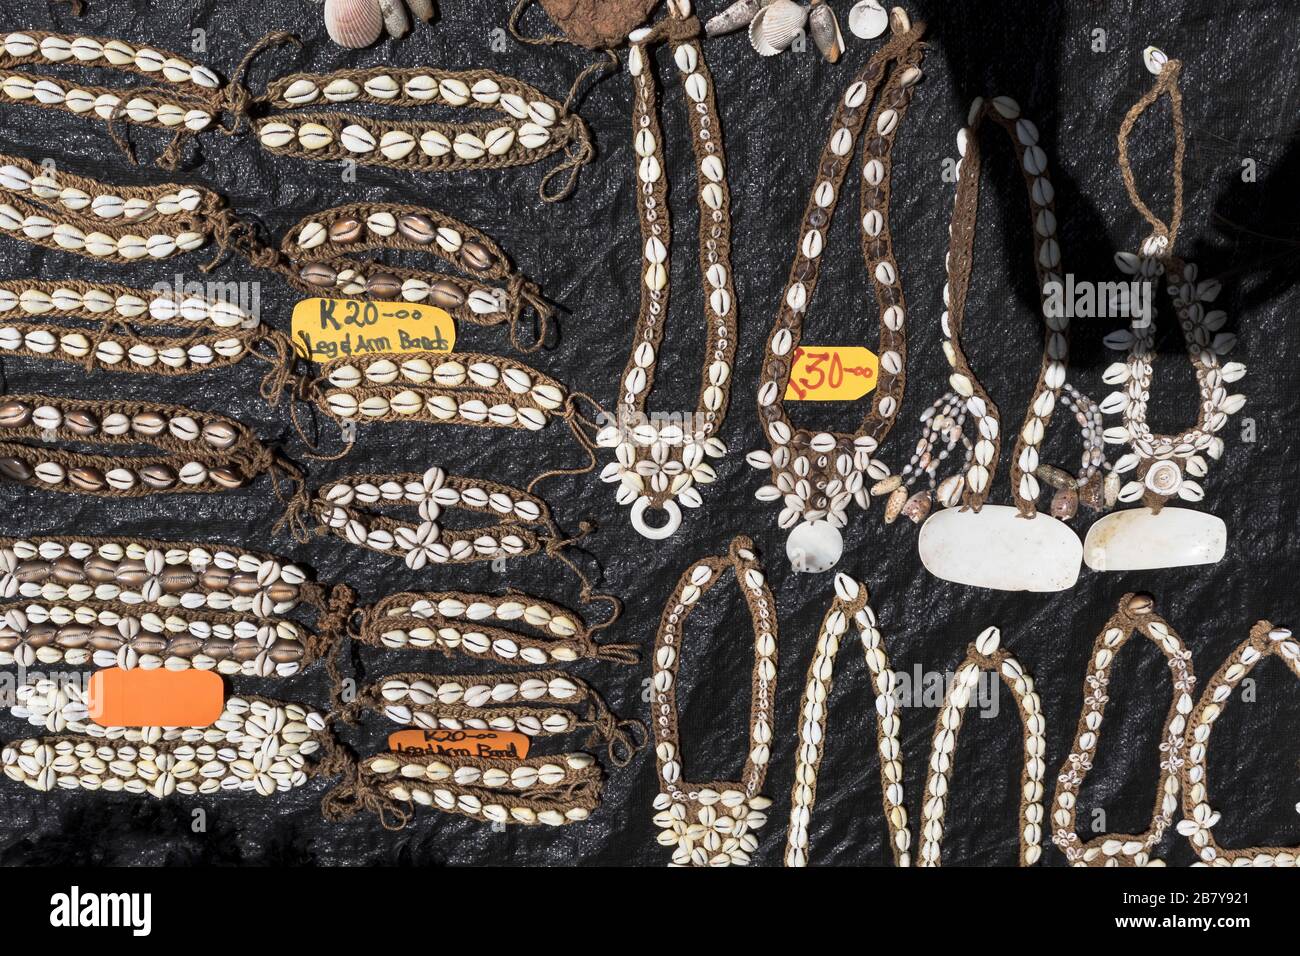 dh marché collier stall PNG WEWAK PAPOUASIE NOUVELLE GUINÉE colliers de coquillages artisanaux produits artisanaux sud-est asie bijoux artisanat fait à la main Banque D'Images